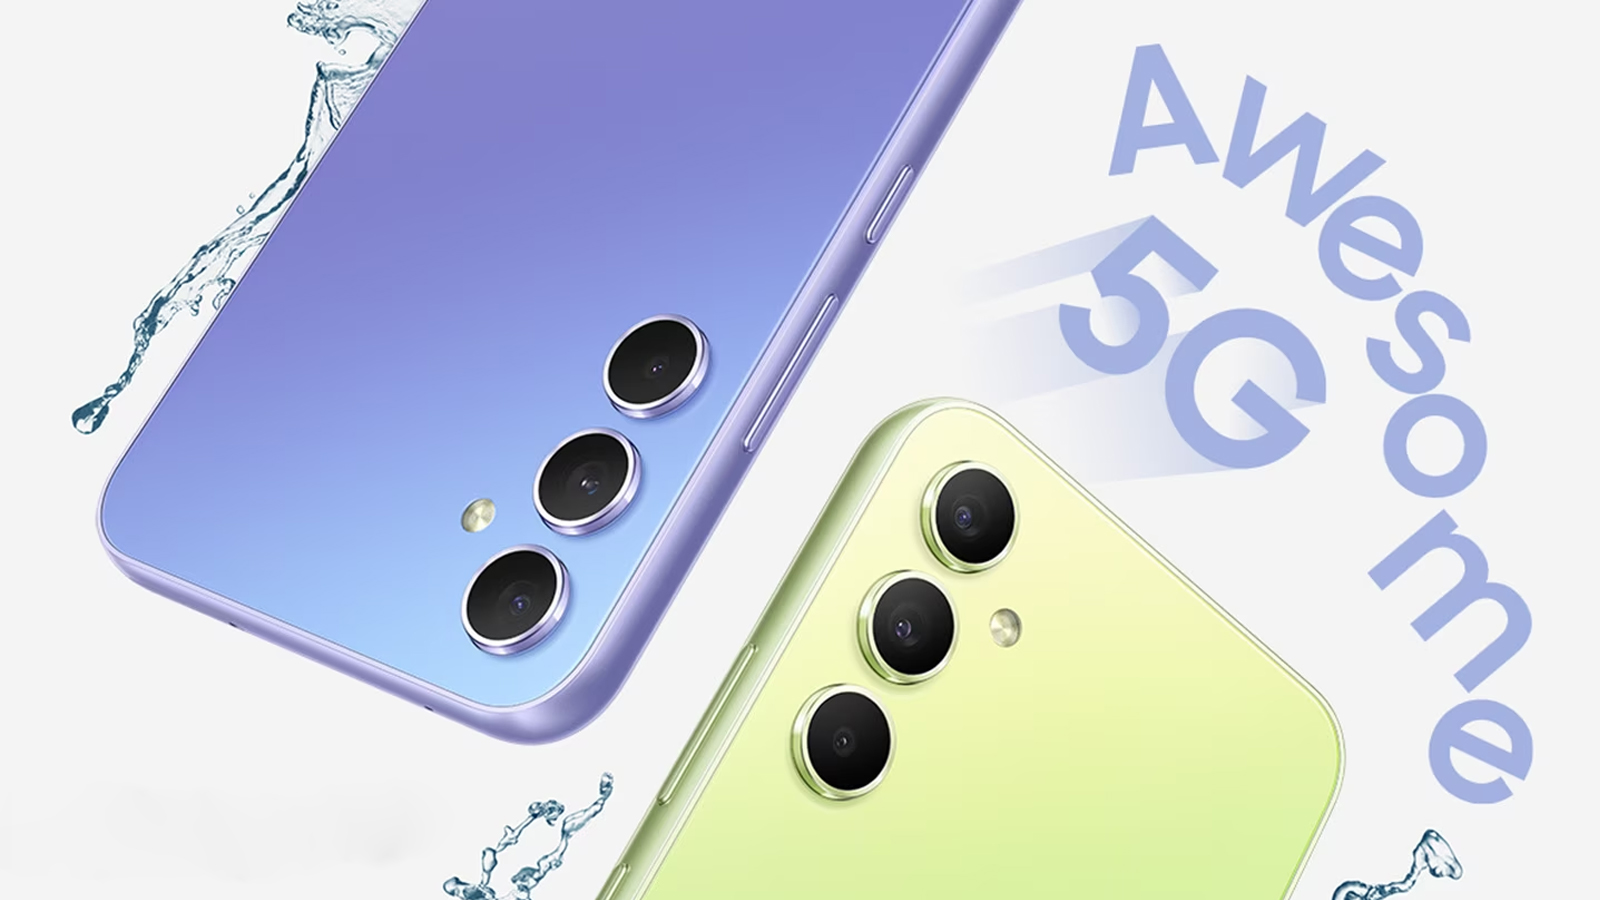 Les smartphones Samsung Galaxy A35 et A55 bénéficieraient d'une finition un peu plus haut de gamme